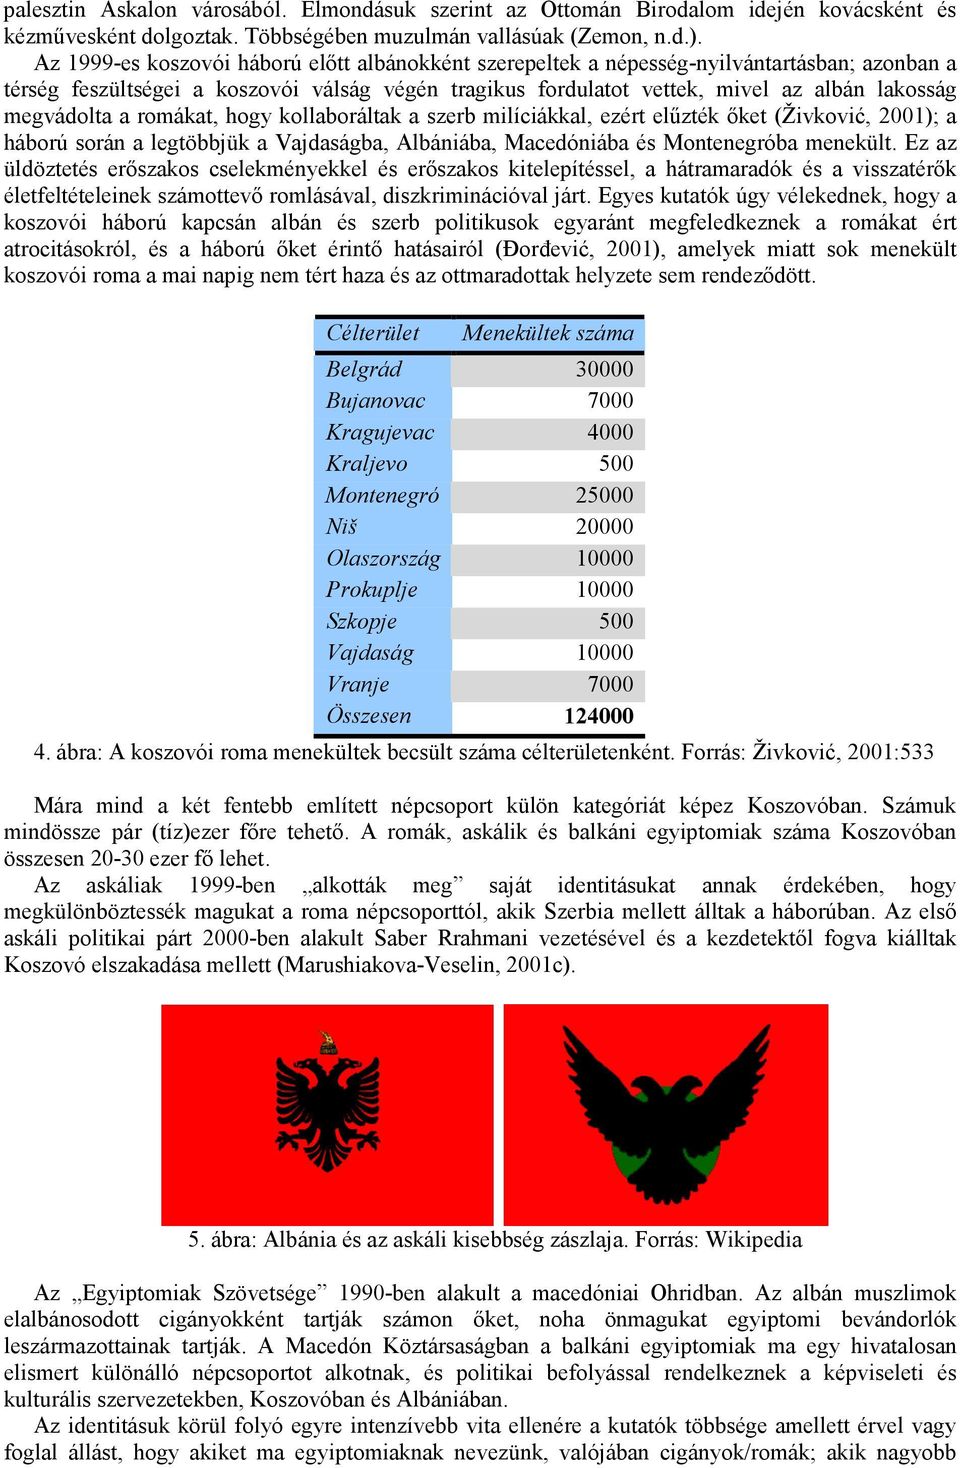 megvádolta a romákat, hogy kollaboráltak a szerb milíciákkal, ezért előzték ıket (Živković, 2001); a háború során a legtöbbjük a Vajdaságba, Albániába, Macedóniába és Montenegróba menekült.